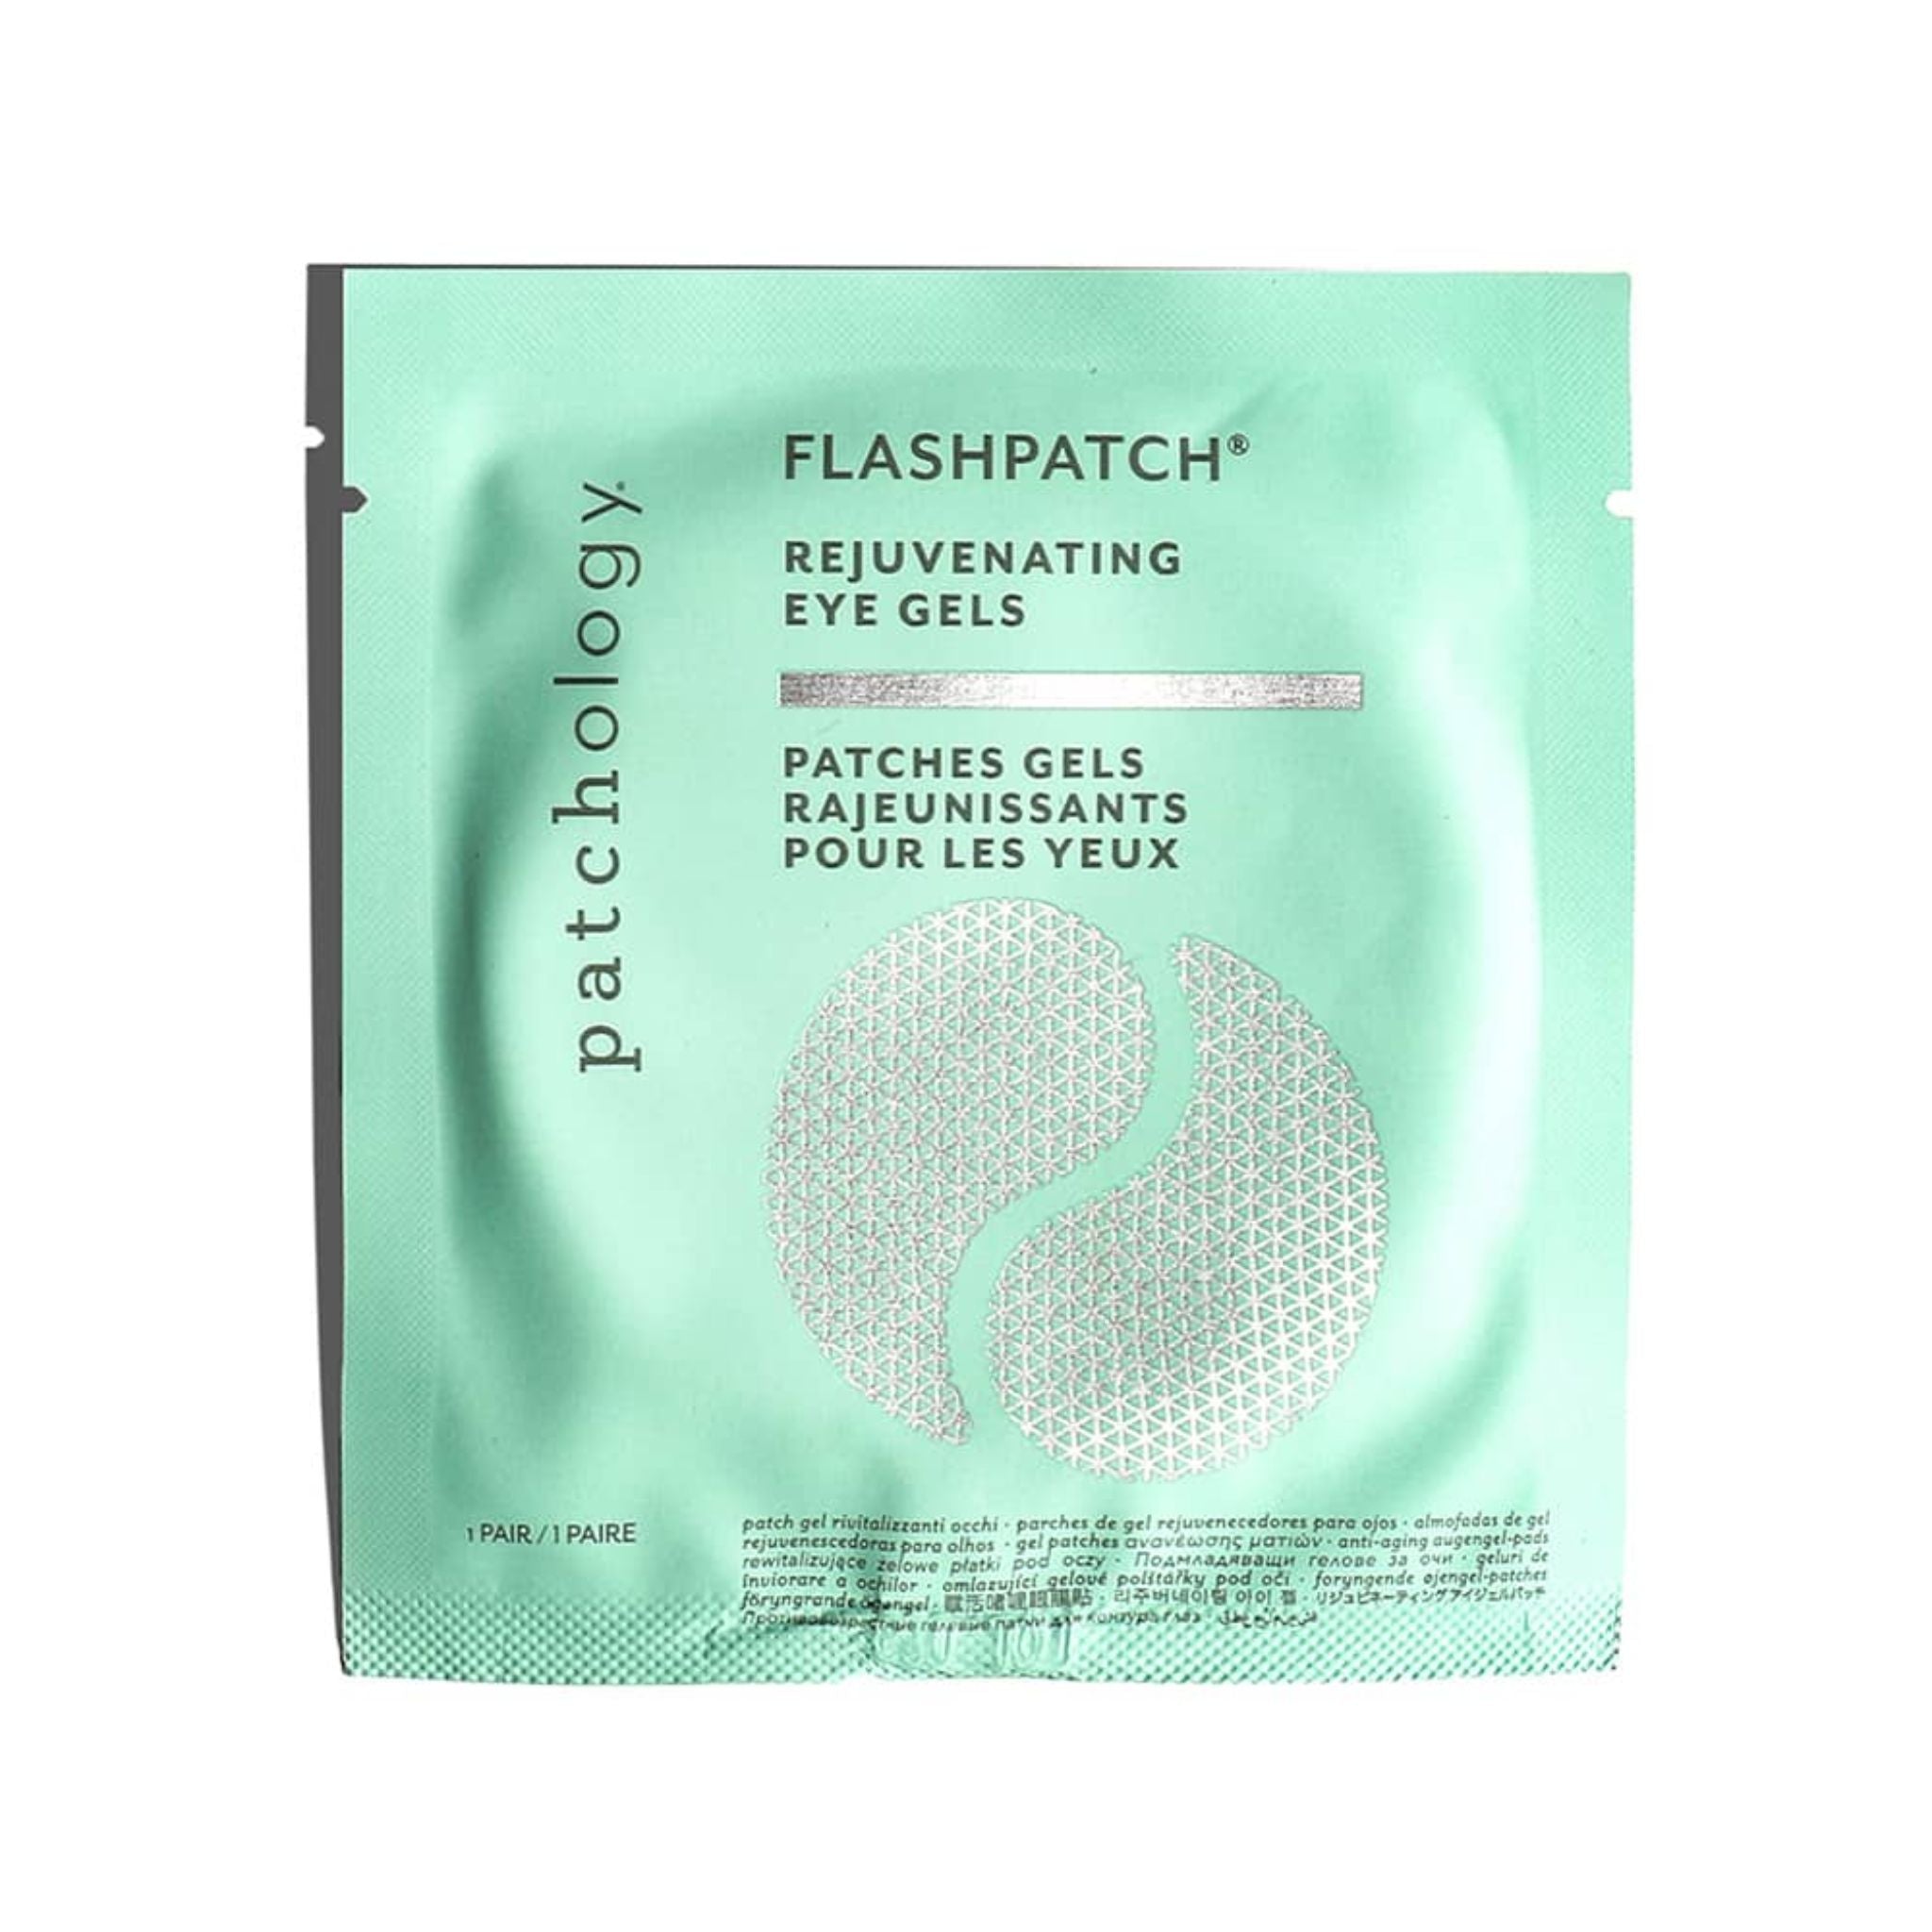 Patchology - FlashPatch® Rejuvenating Eye Gels